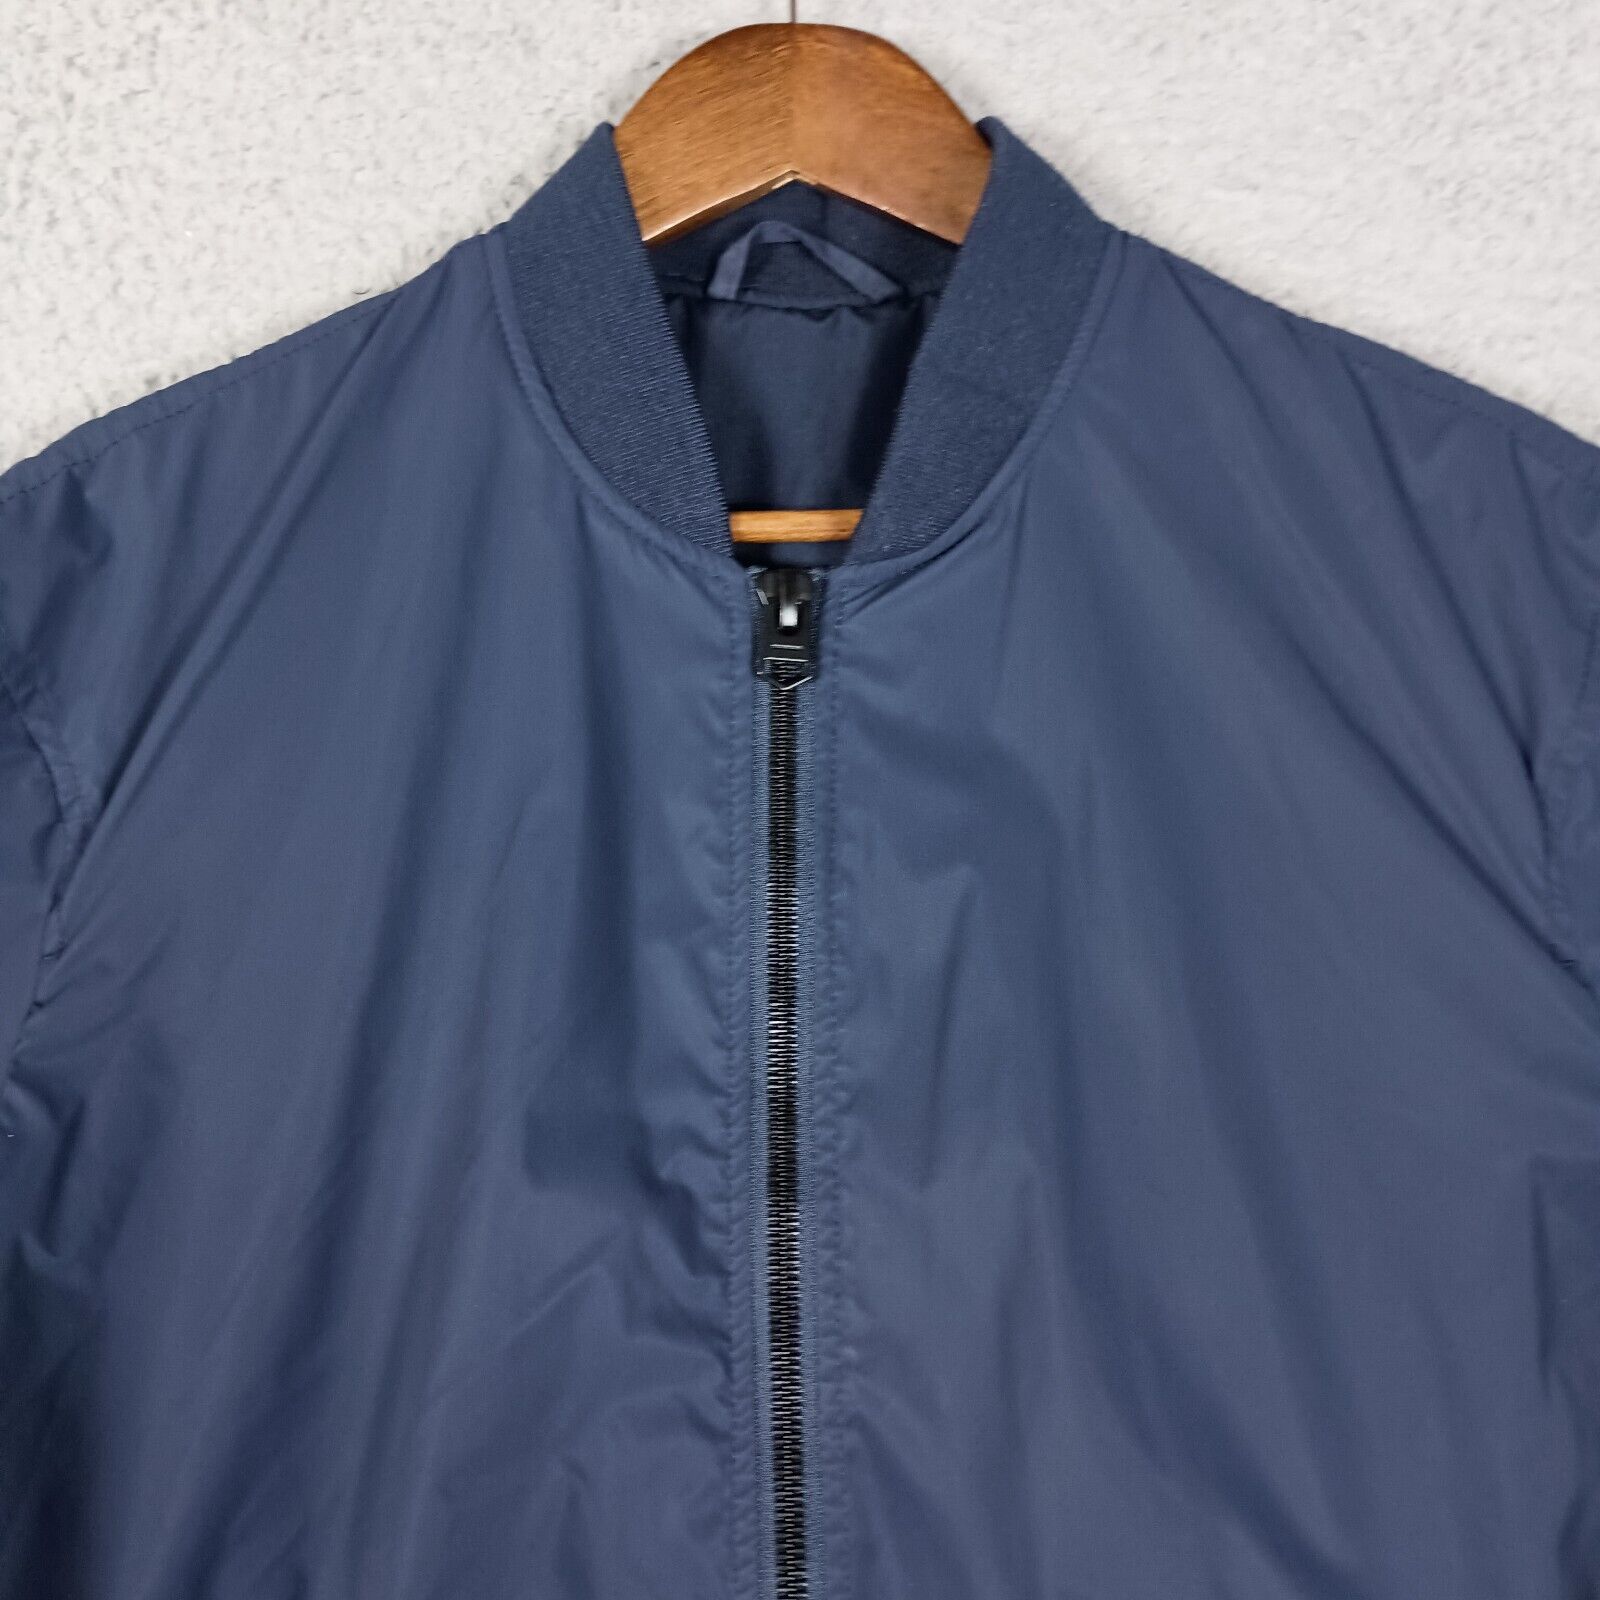 Zara Bomber Jacket Men's Medium Navy Blue Full Zip Lightweight Snap Pockets